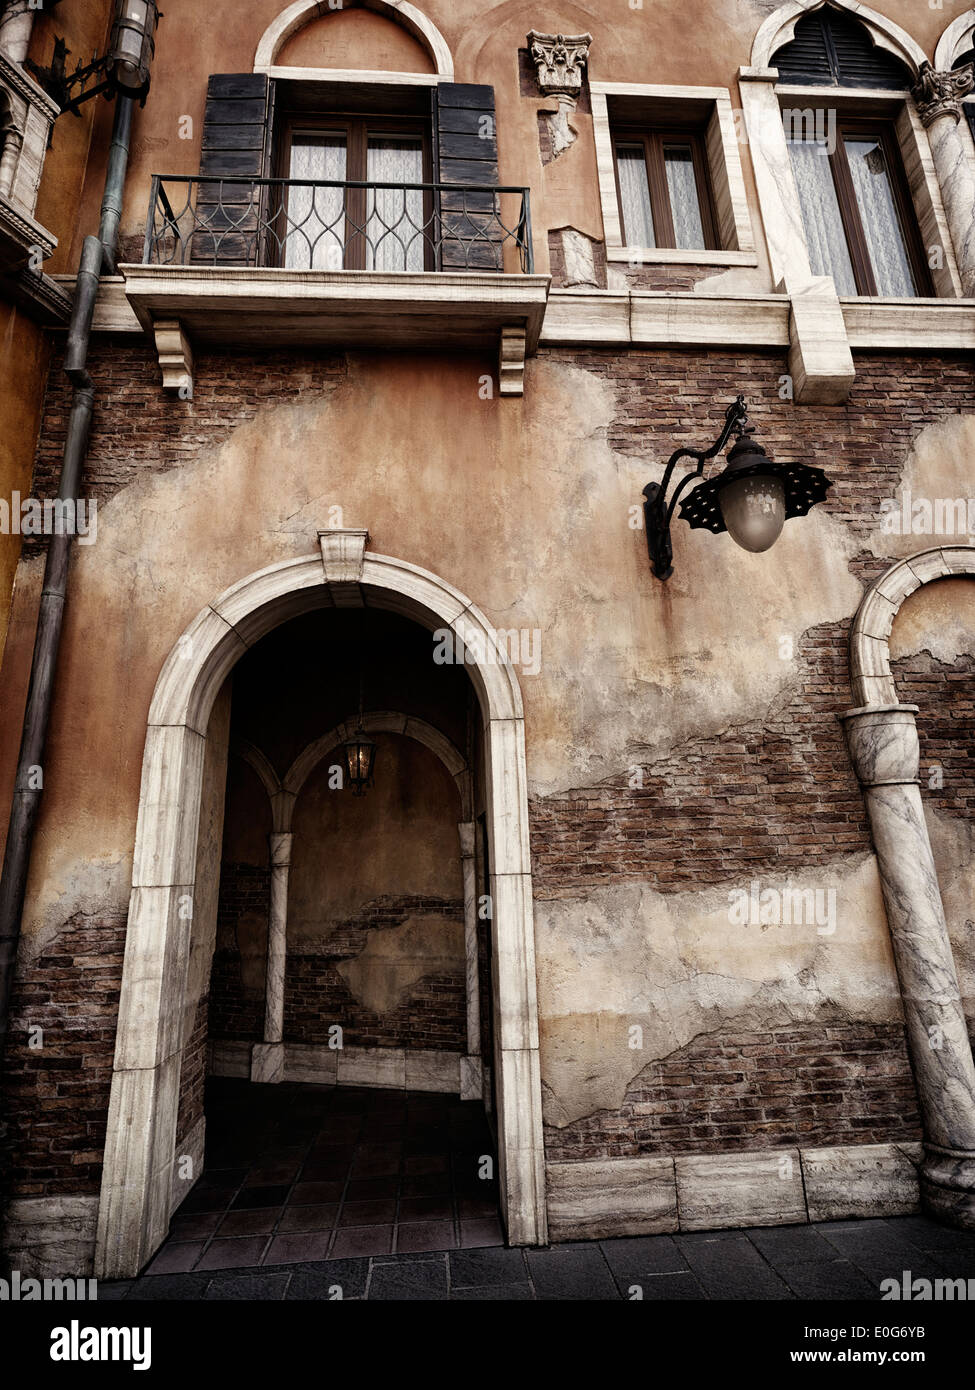 Passage d'Archway dans un vieux bâtiment rustique en architecture de style gothique vénitien Banque D'Images